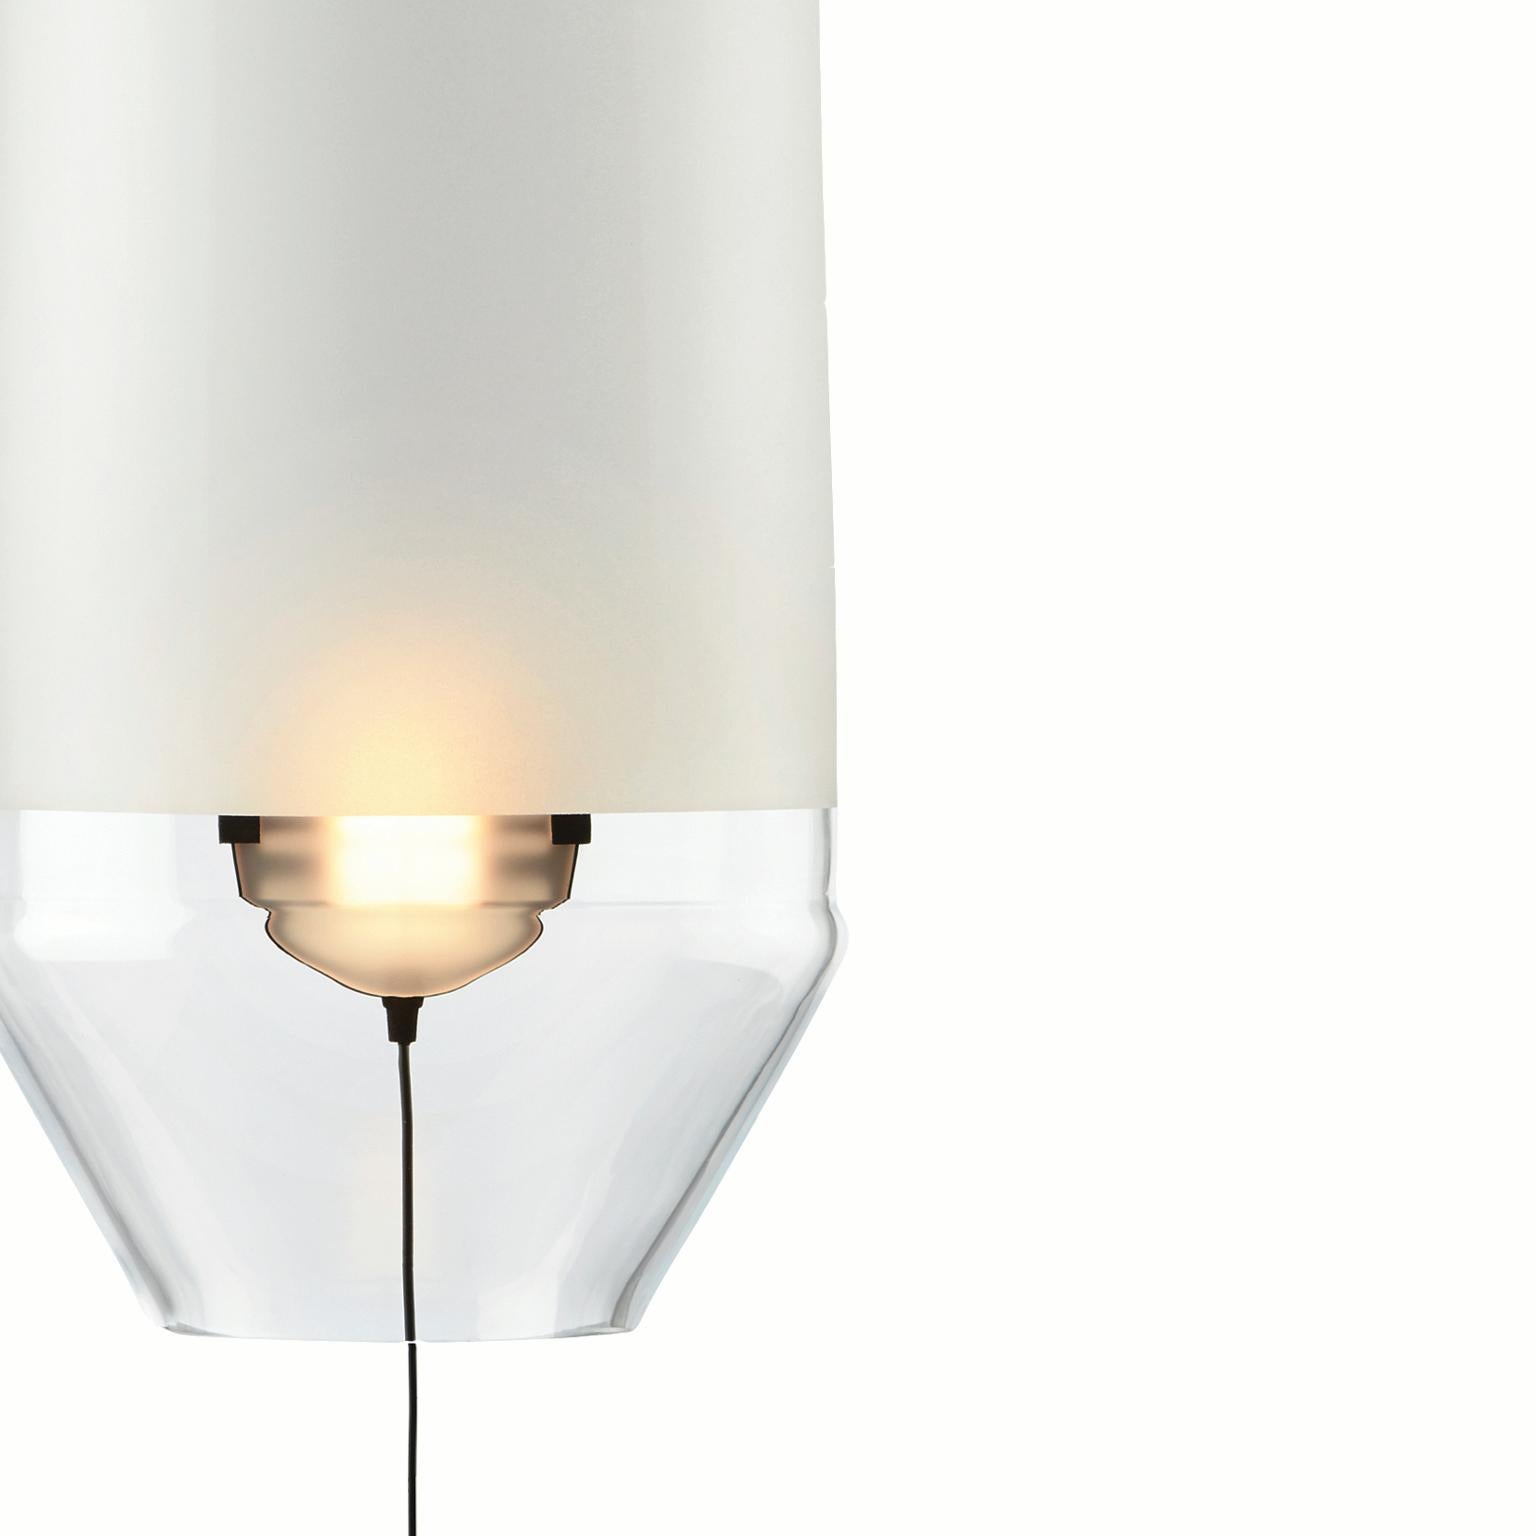 Unsere limpid light Größe S ist eine Pendelleuchte, dekorative Leuchte, hergestellt in Europa.
Die Kollektion Limpid Lights, eine Reihe von Beleuchtungsobjekten, die Bewegung als Schlüsselelement ihres Designs einbeziehen.
Indem man die Lichtquelle